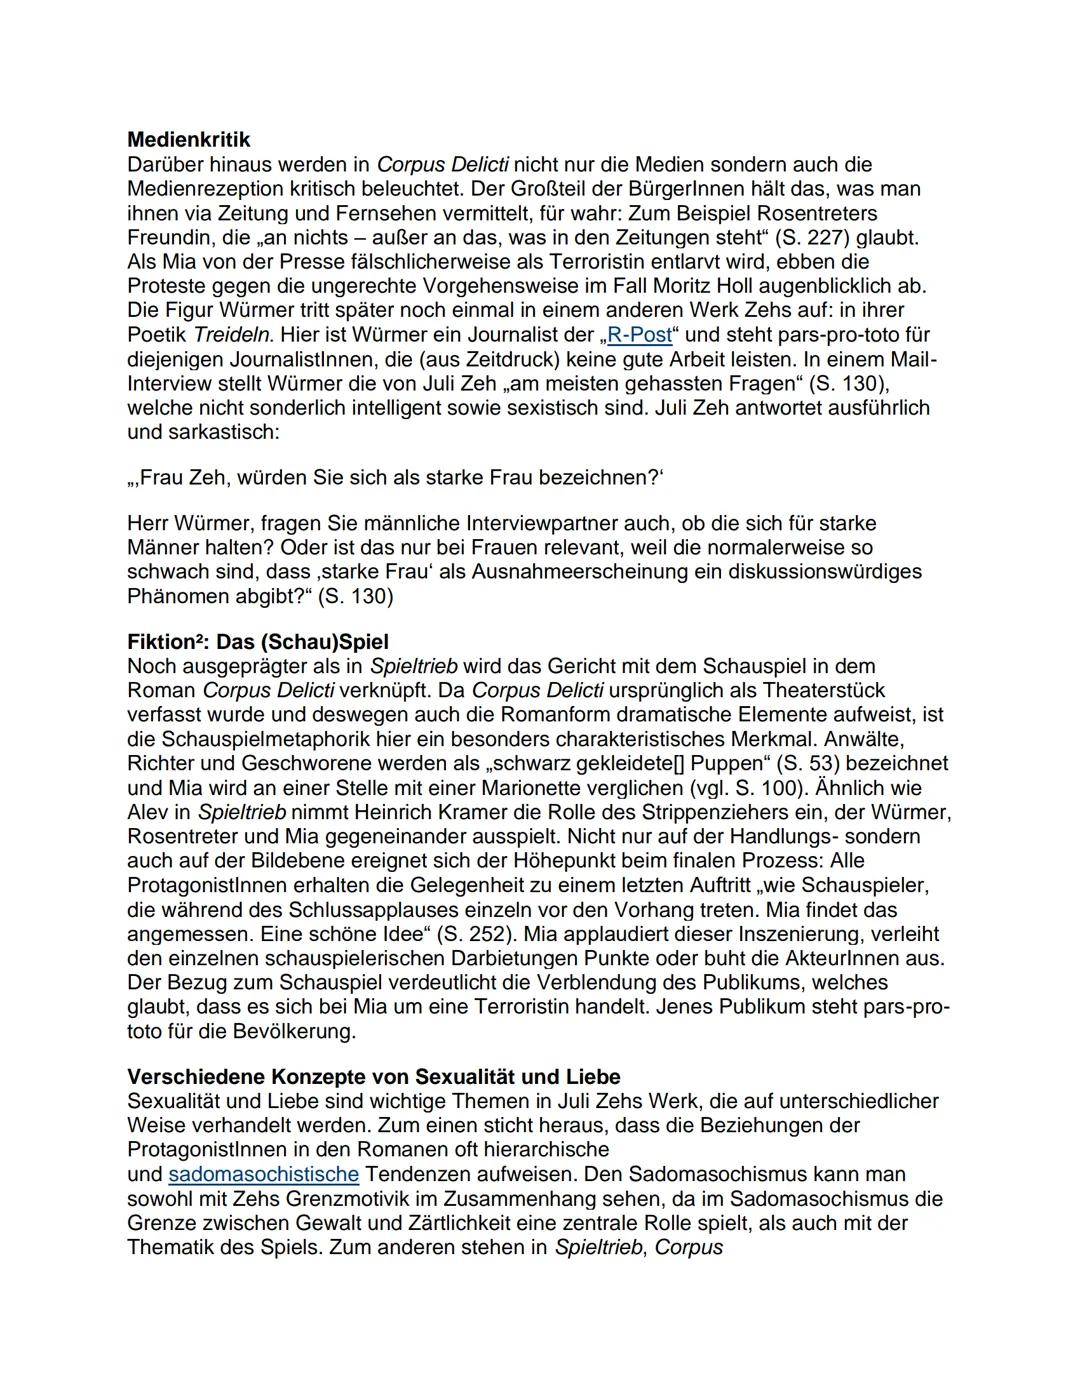 Deutsch - Abiturvorbereitung
Themenübersicht:
Q1.1 Epoche der Weimarer Klassik
Q1.2 Epoche der Romantik
Q2
E.T.H Hoffmann - Sandmann
Q2.1 Ju